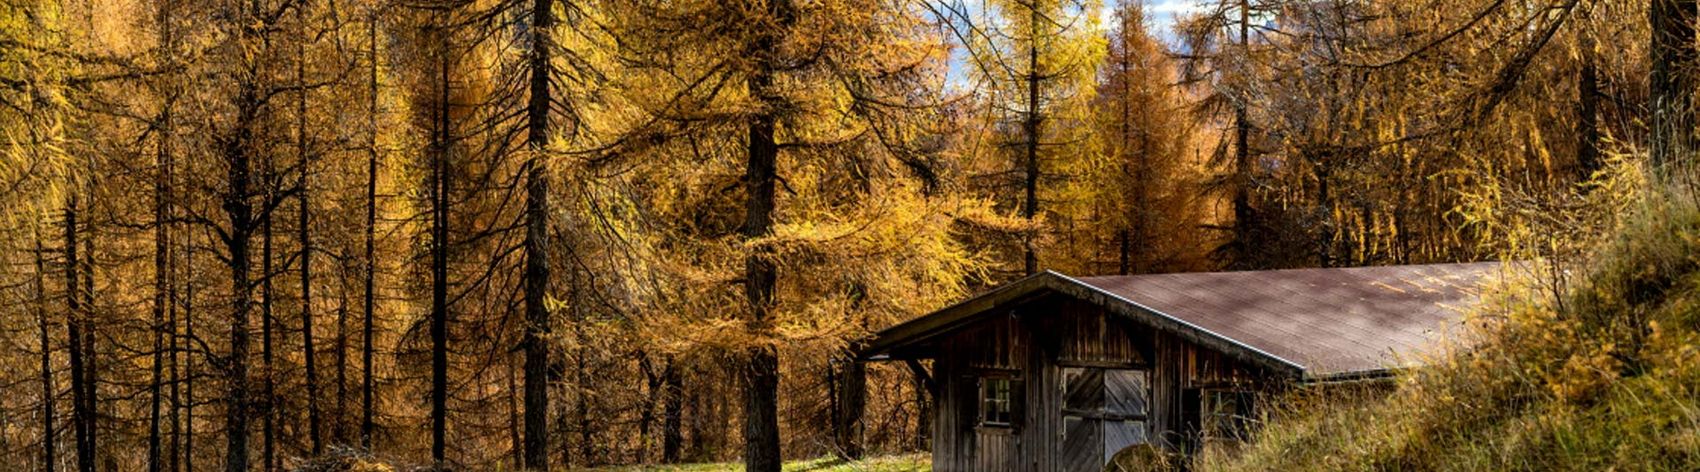 Goldener Lärchenwald im Herbst